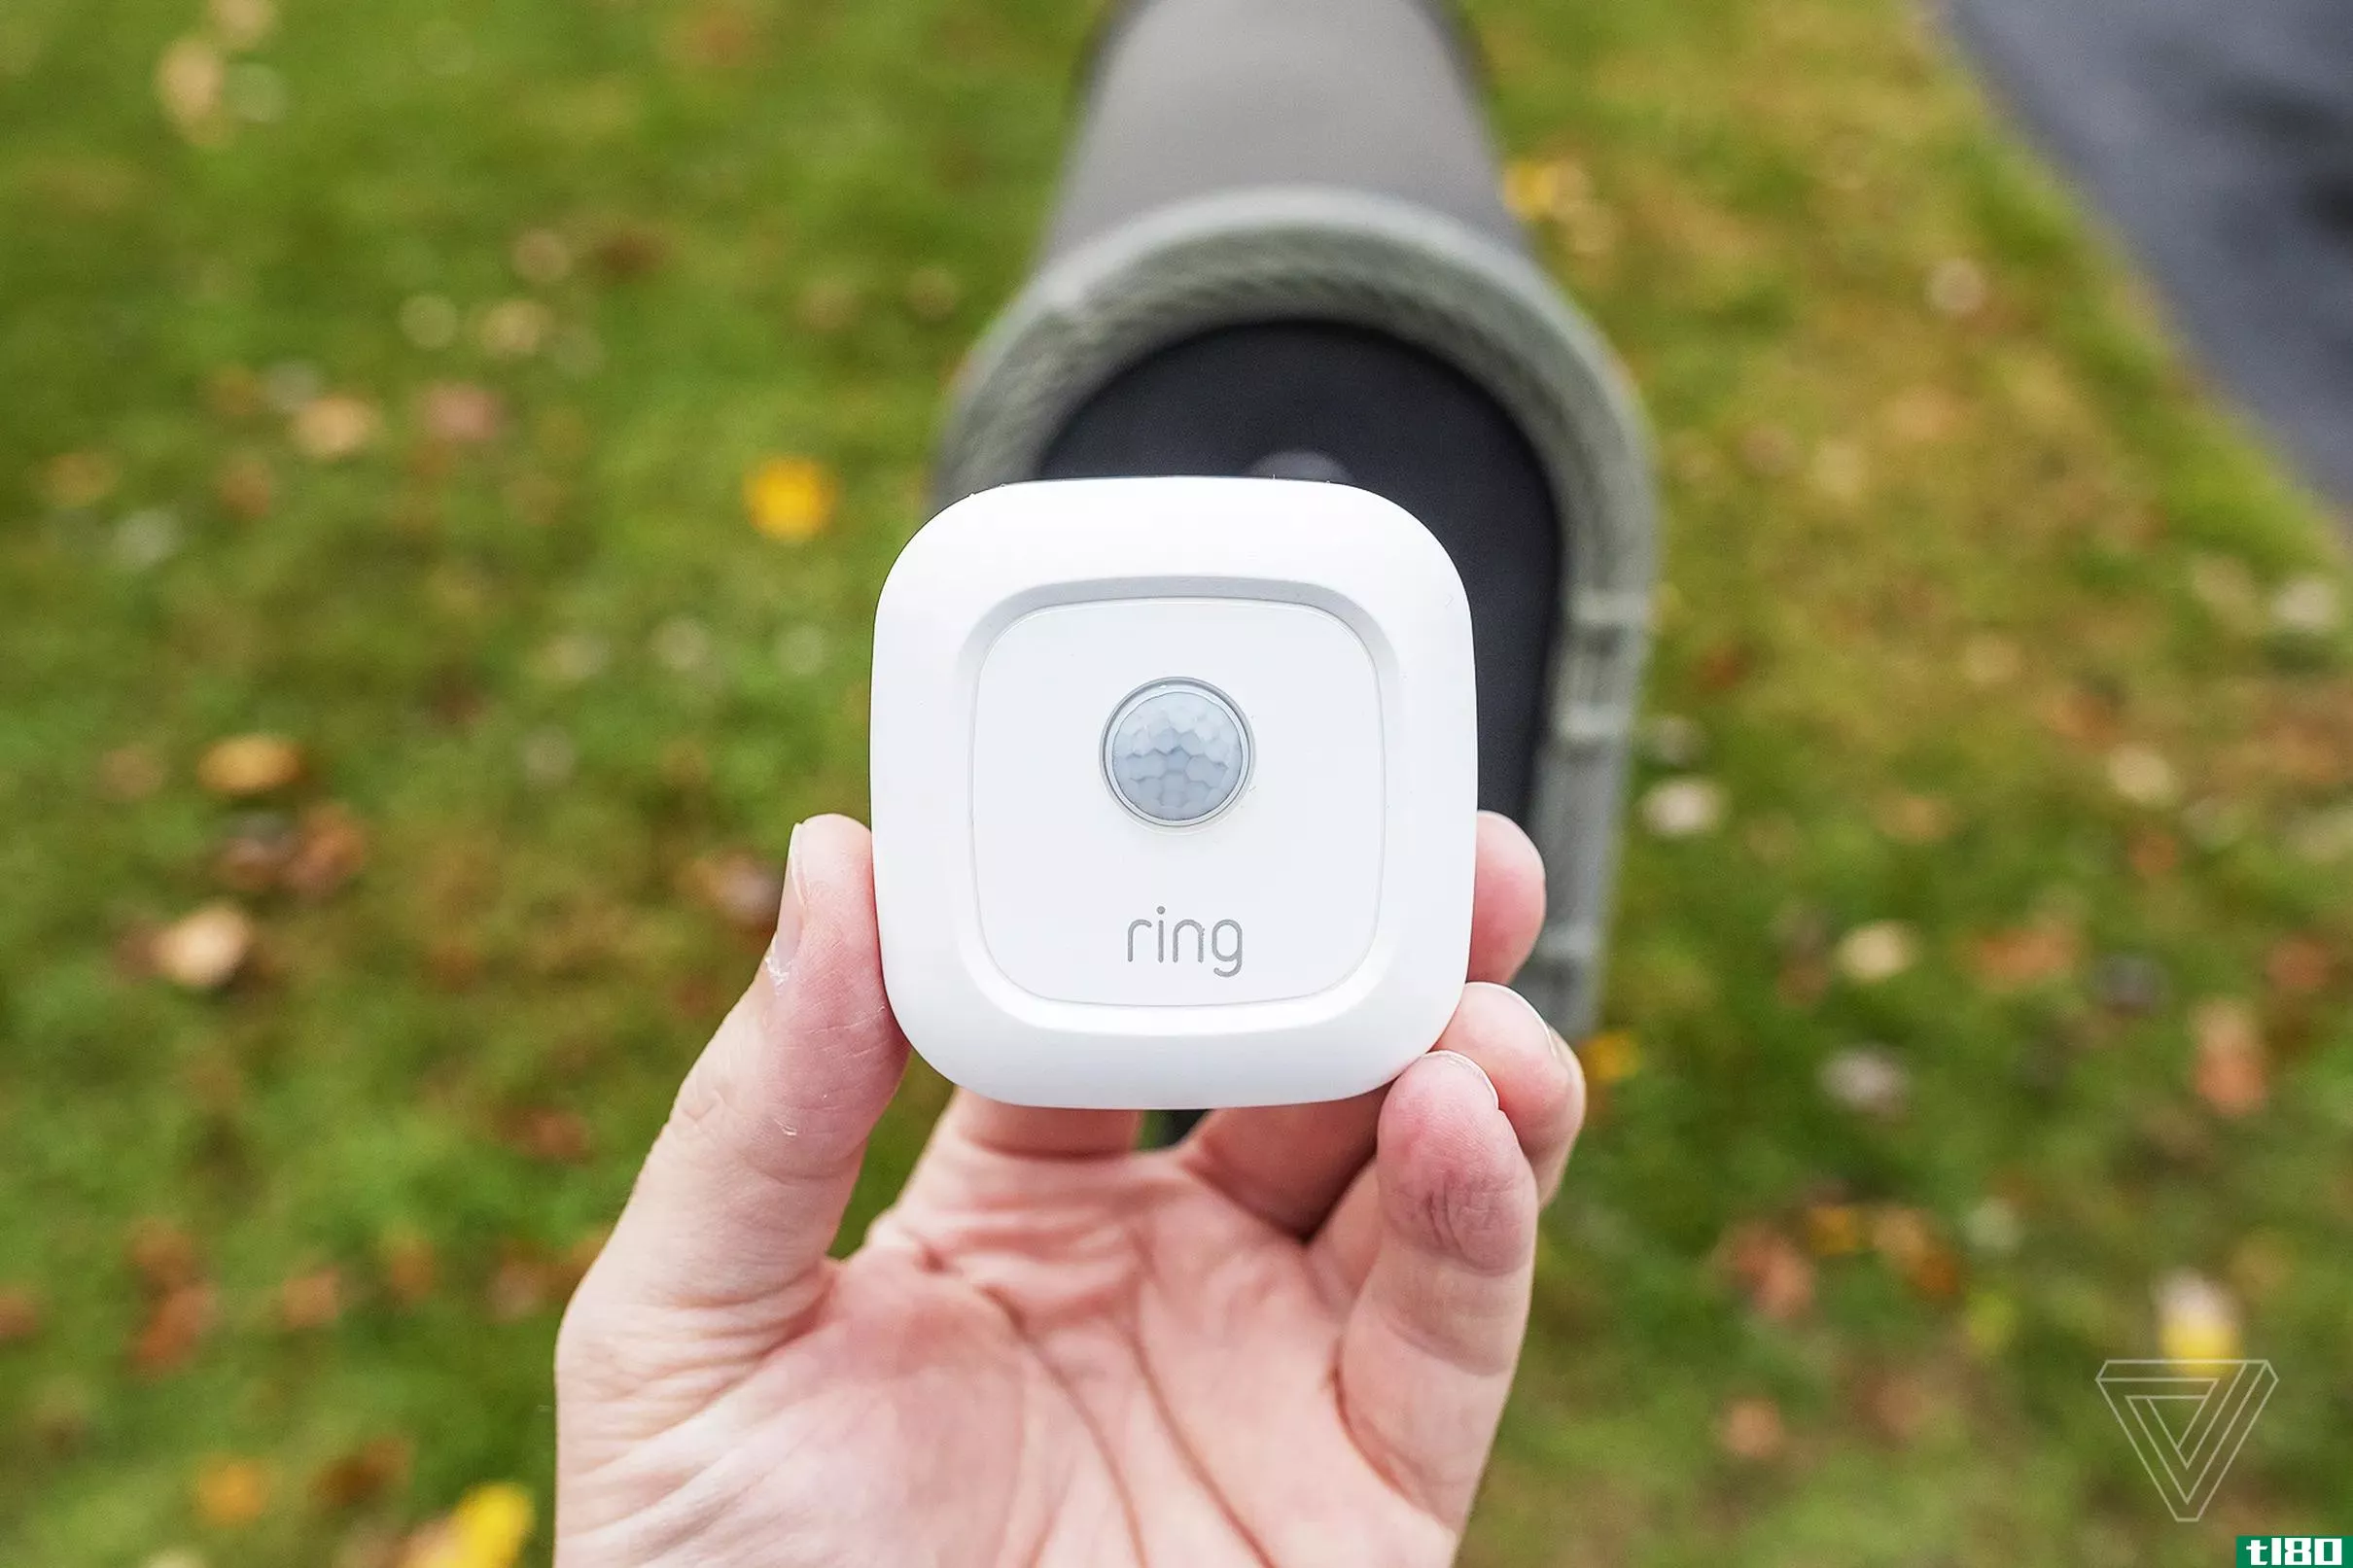 ring的邮箱传感器是我测试过的比较乏味的智能家居设备之一